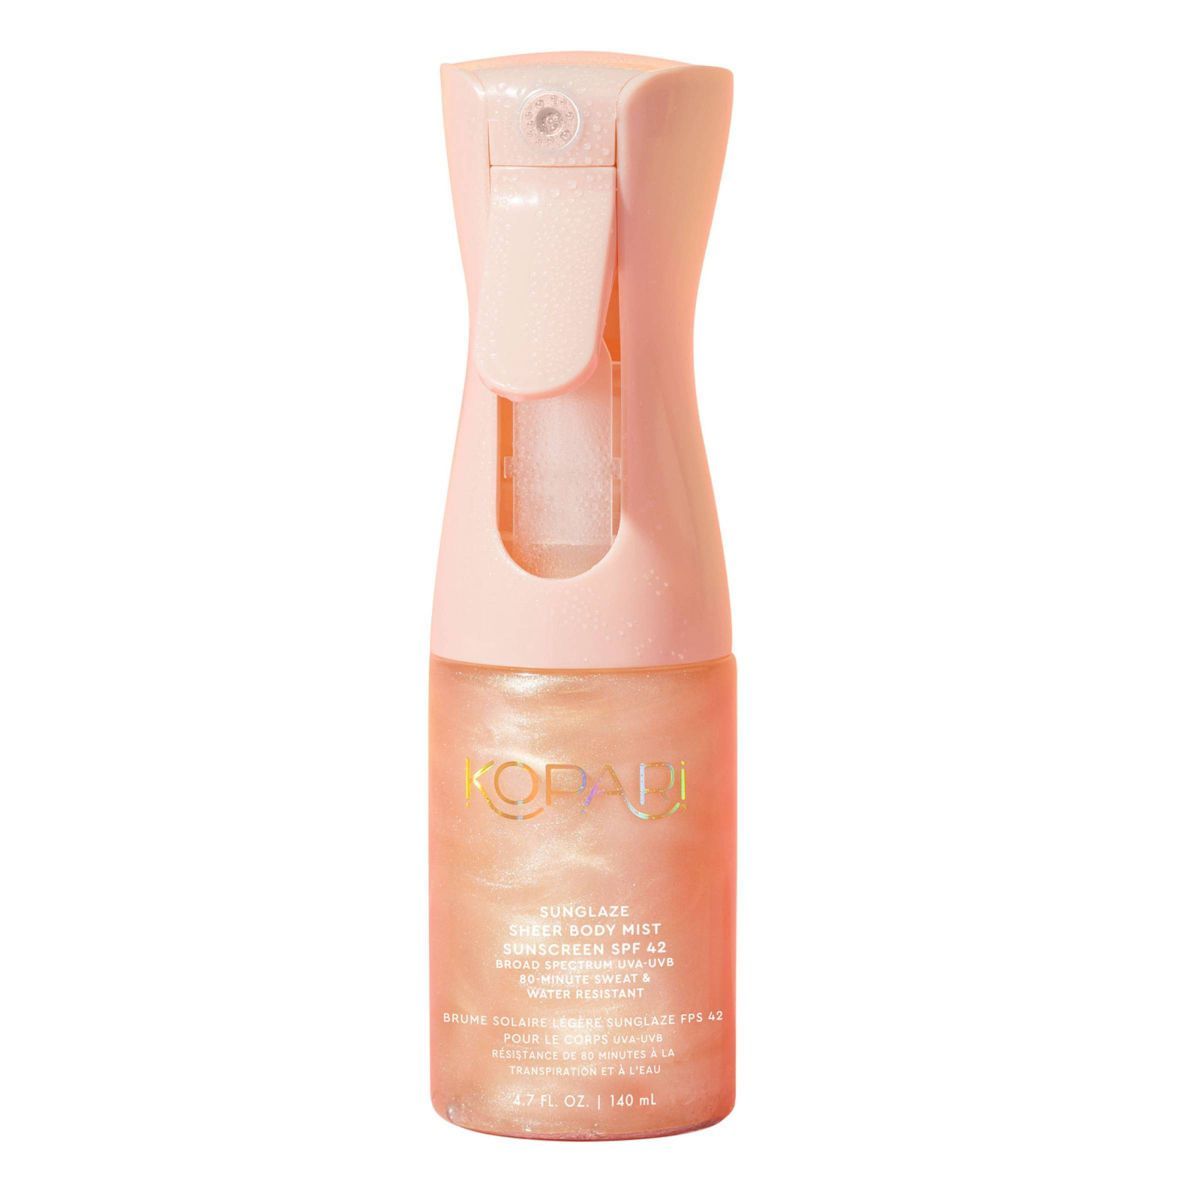 Kopari Sunglaze Sheer Body Mist Sunscreen - SPF 42 - 4.7oz - Ulta Beauty | Target